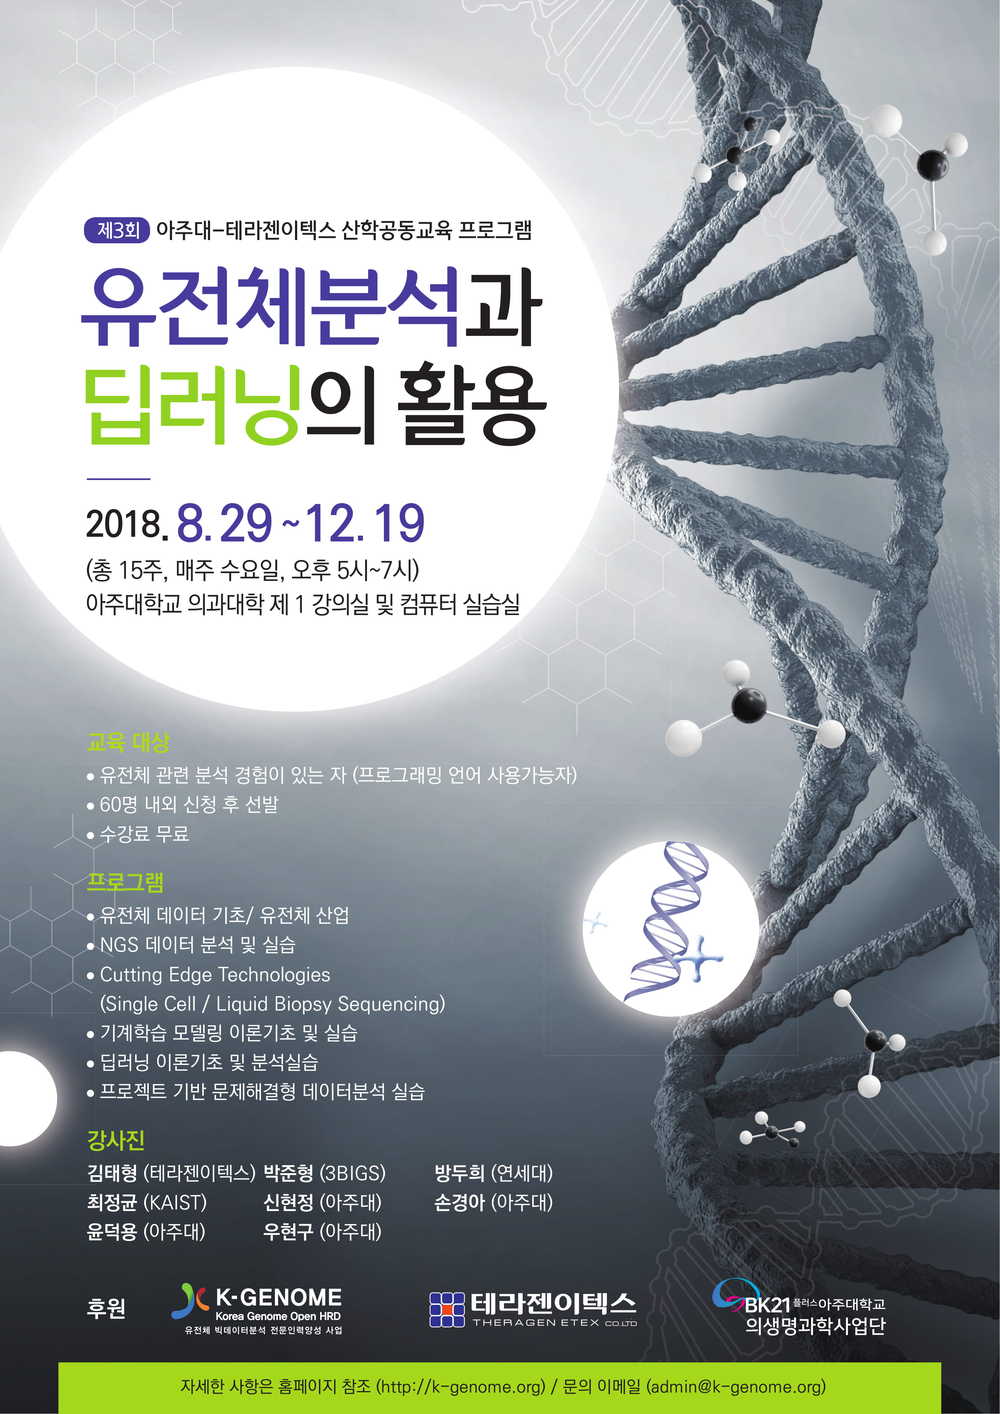 0813 (포스터수정) - 아주의료원 - 유전체분석과 딥러닝의 활용-1(최종).jpg